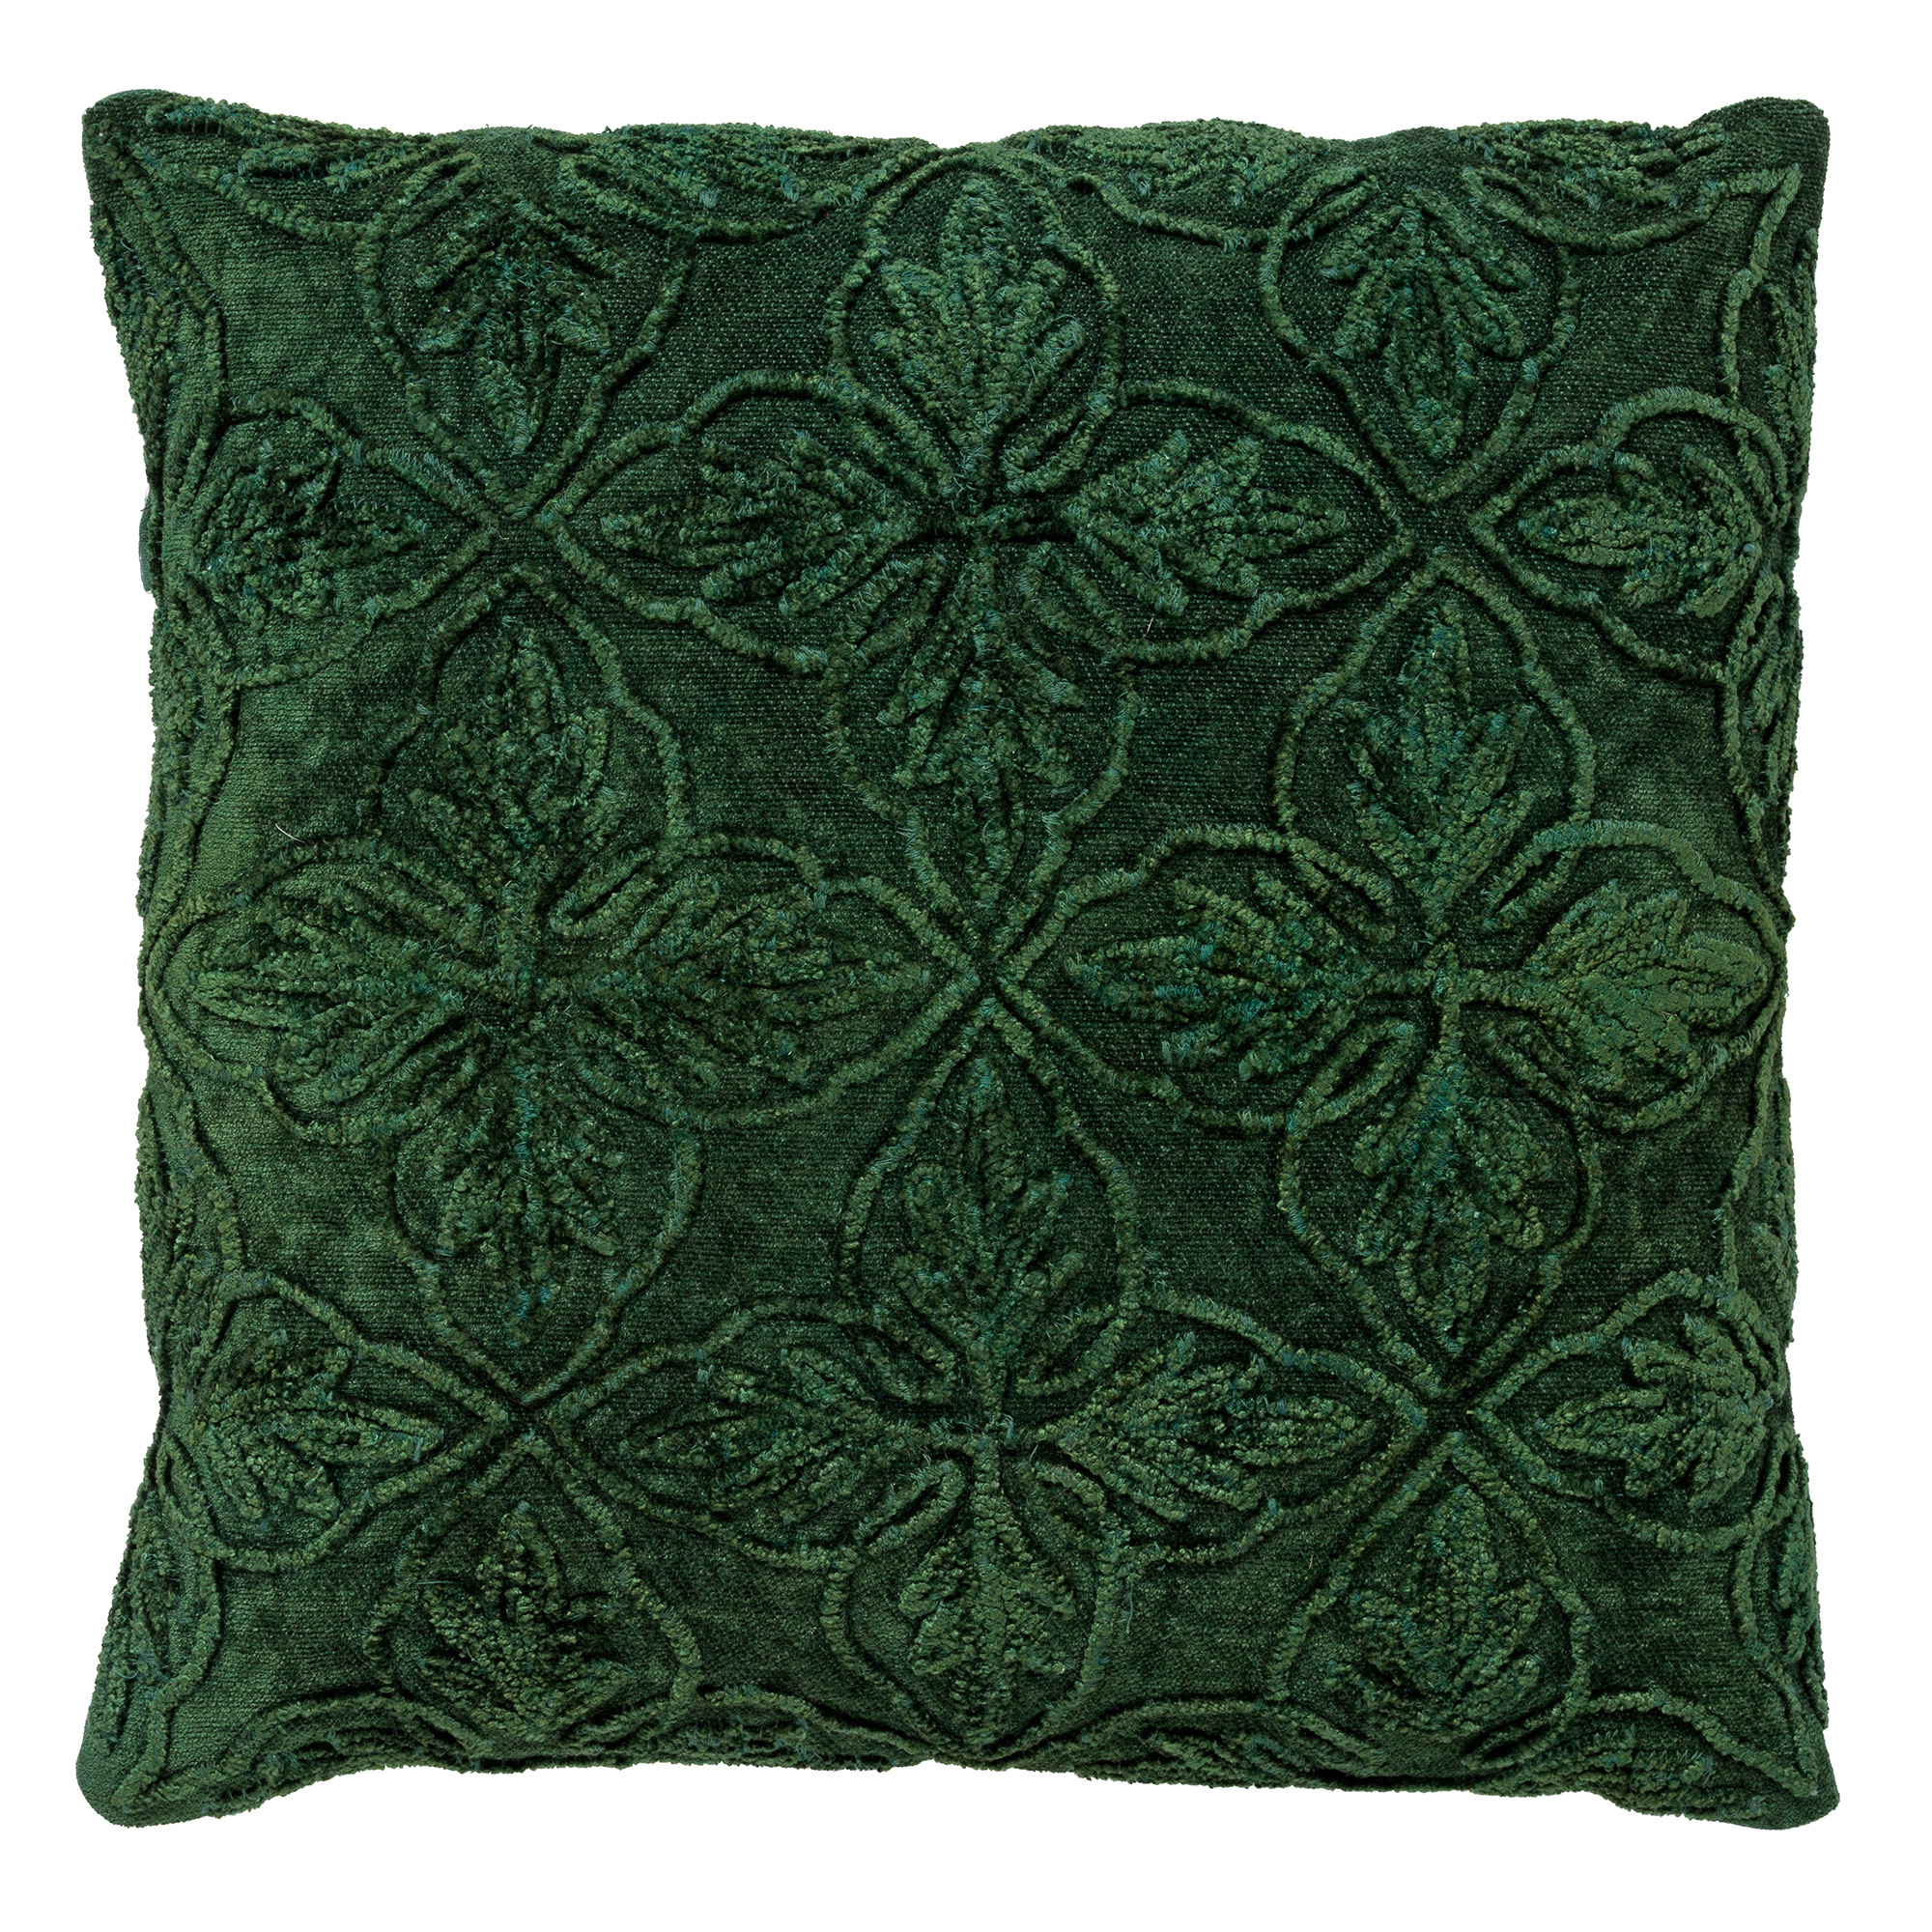 AMAR - Cushion cover cotton 45x45 cm Mountain View